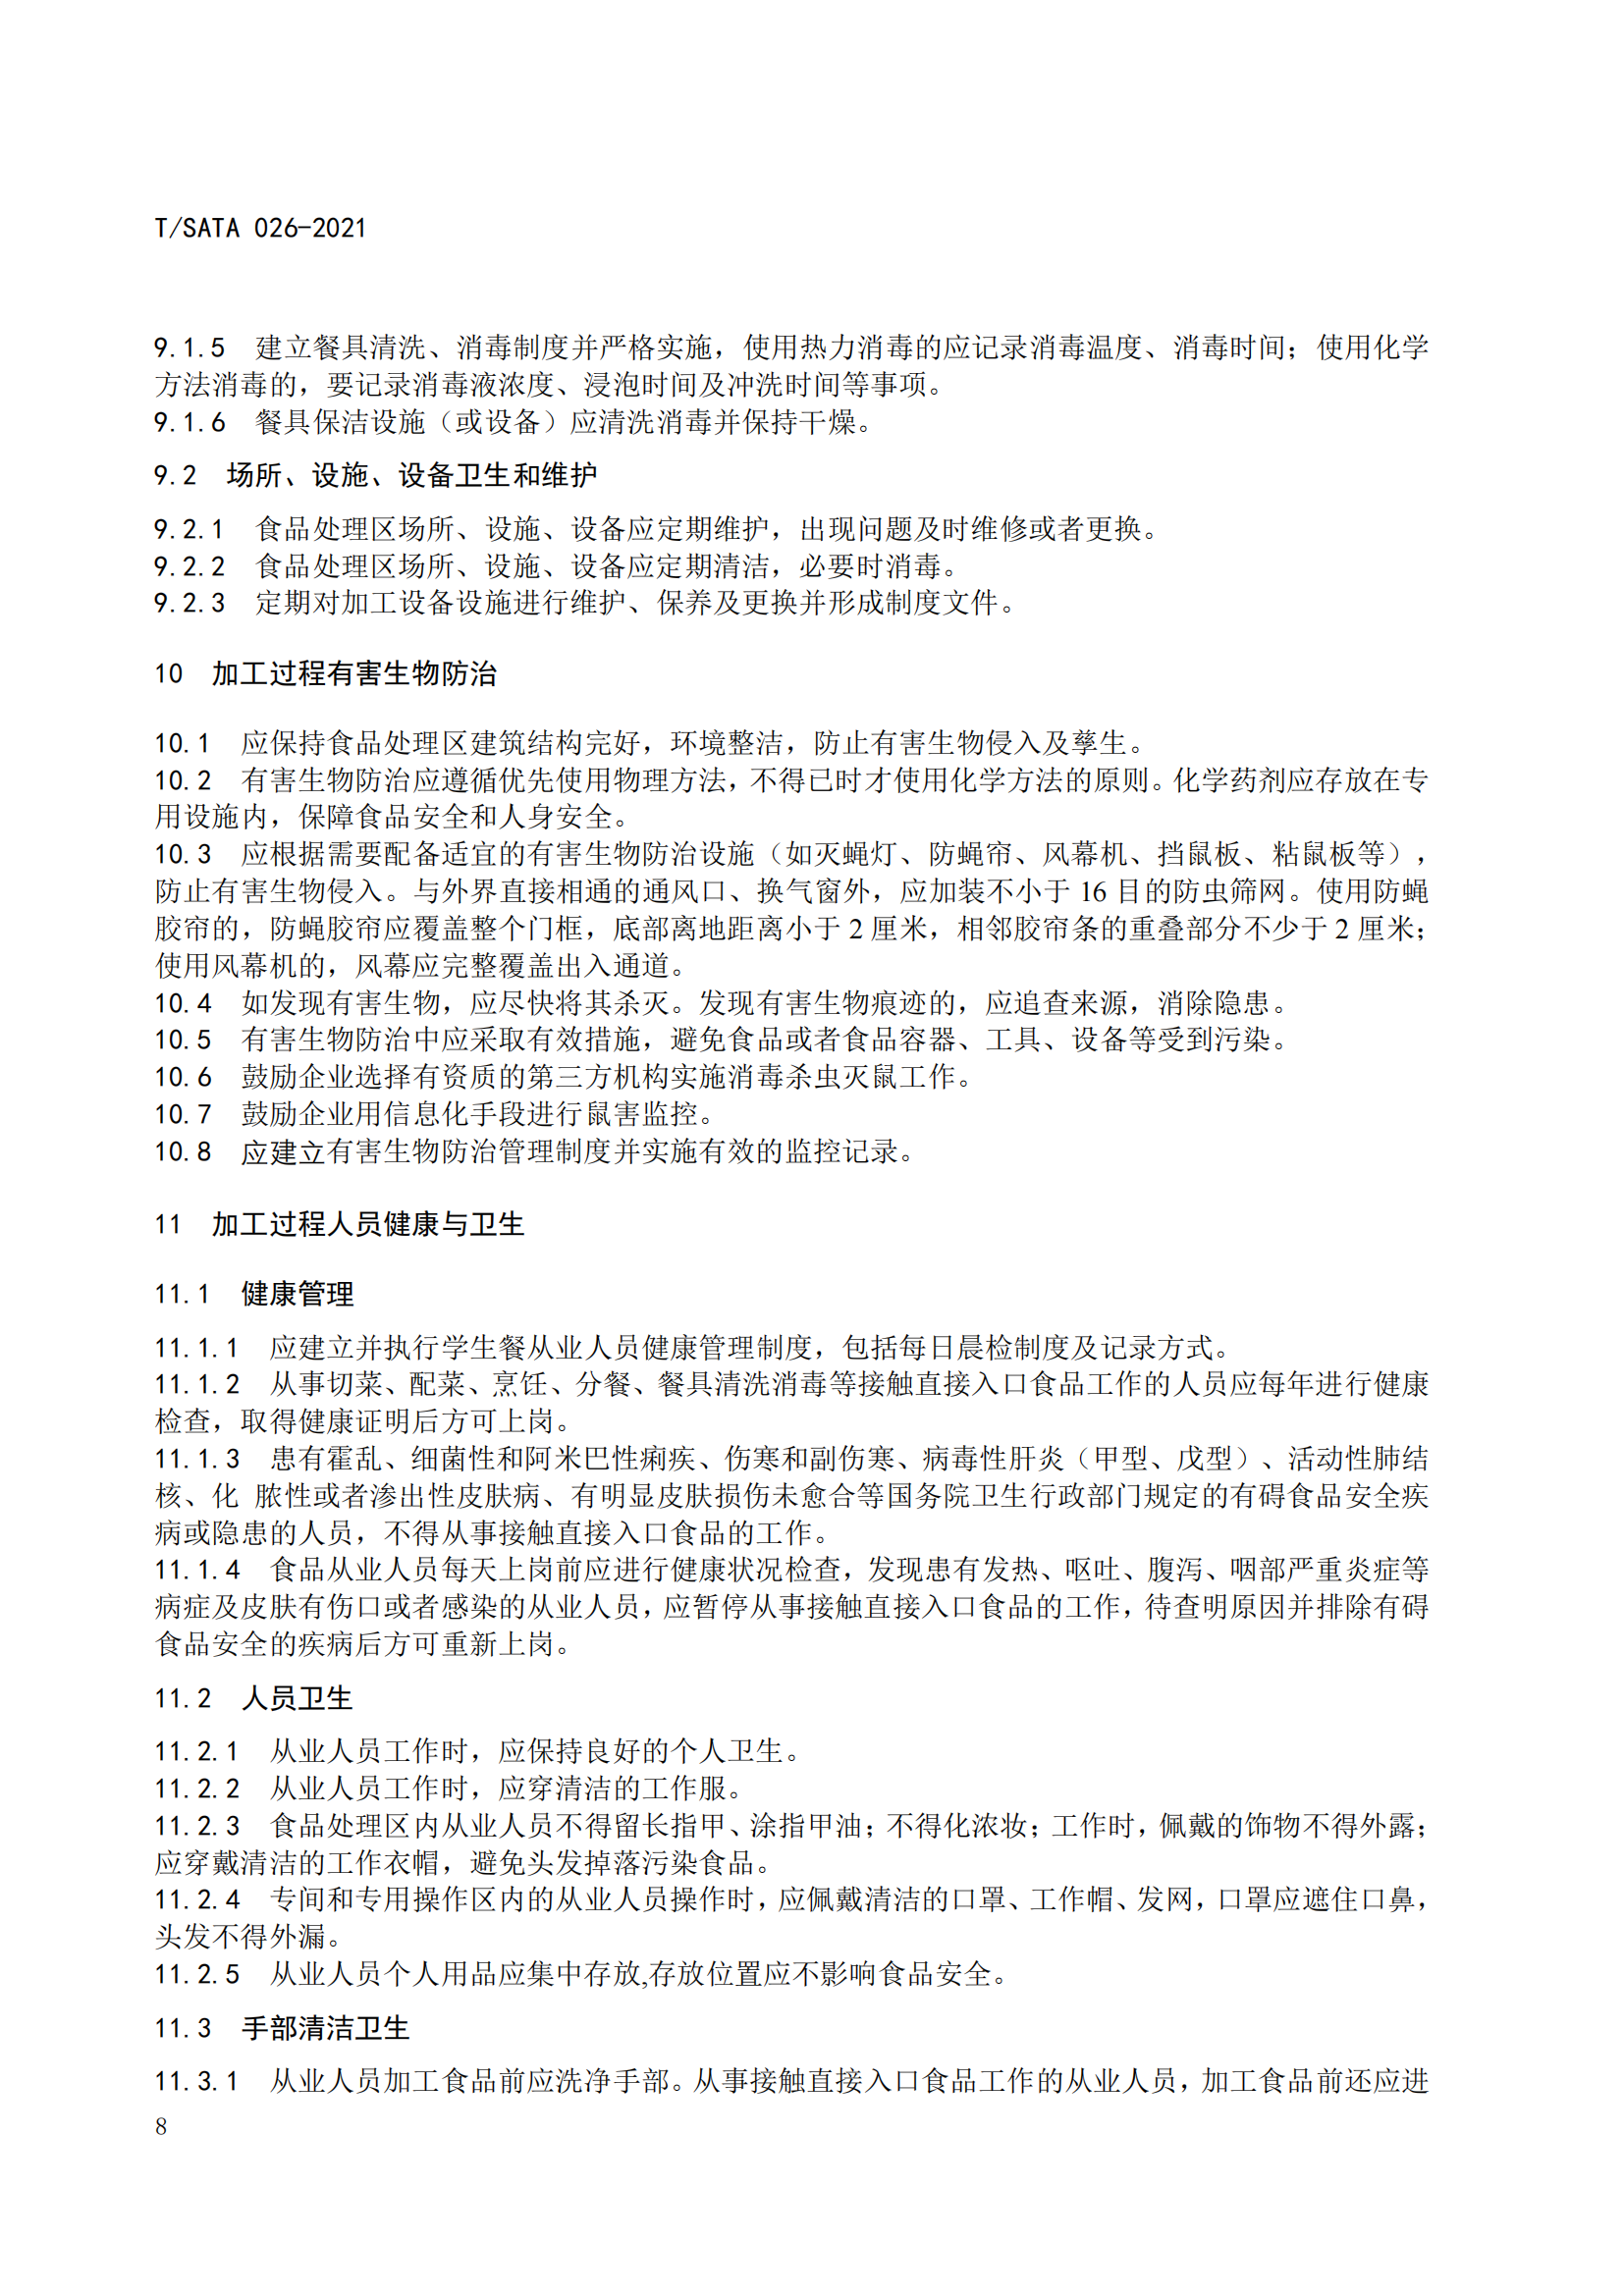 《深圳市校外集中配送学生餐操作规范》团体标准（发布版）2021.11.18终_10.png